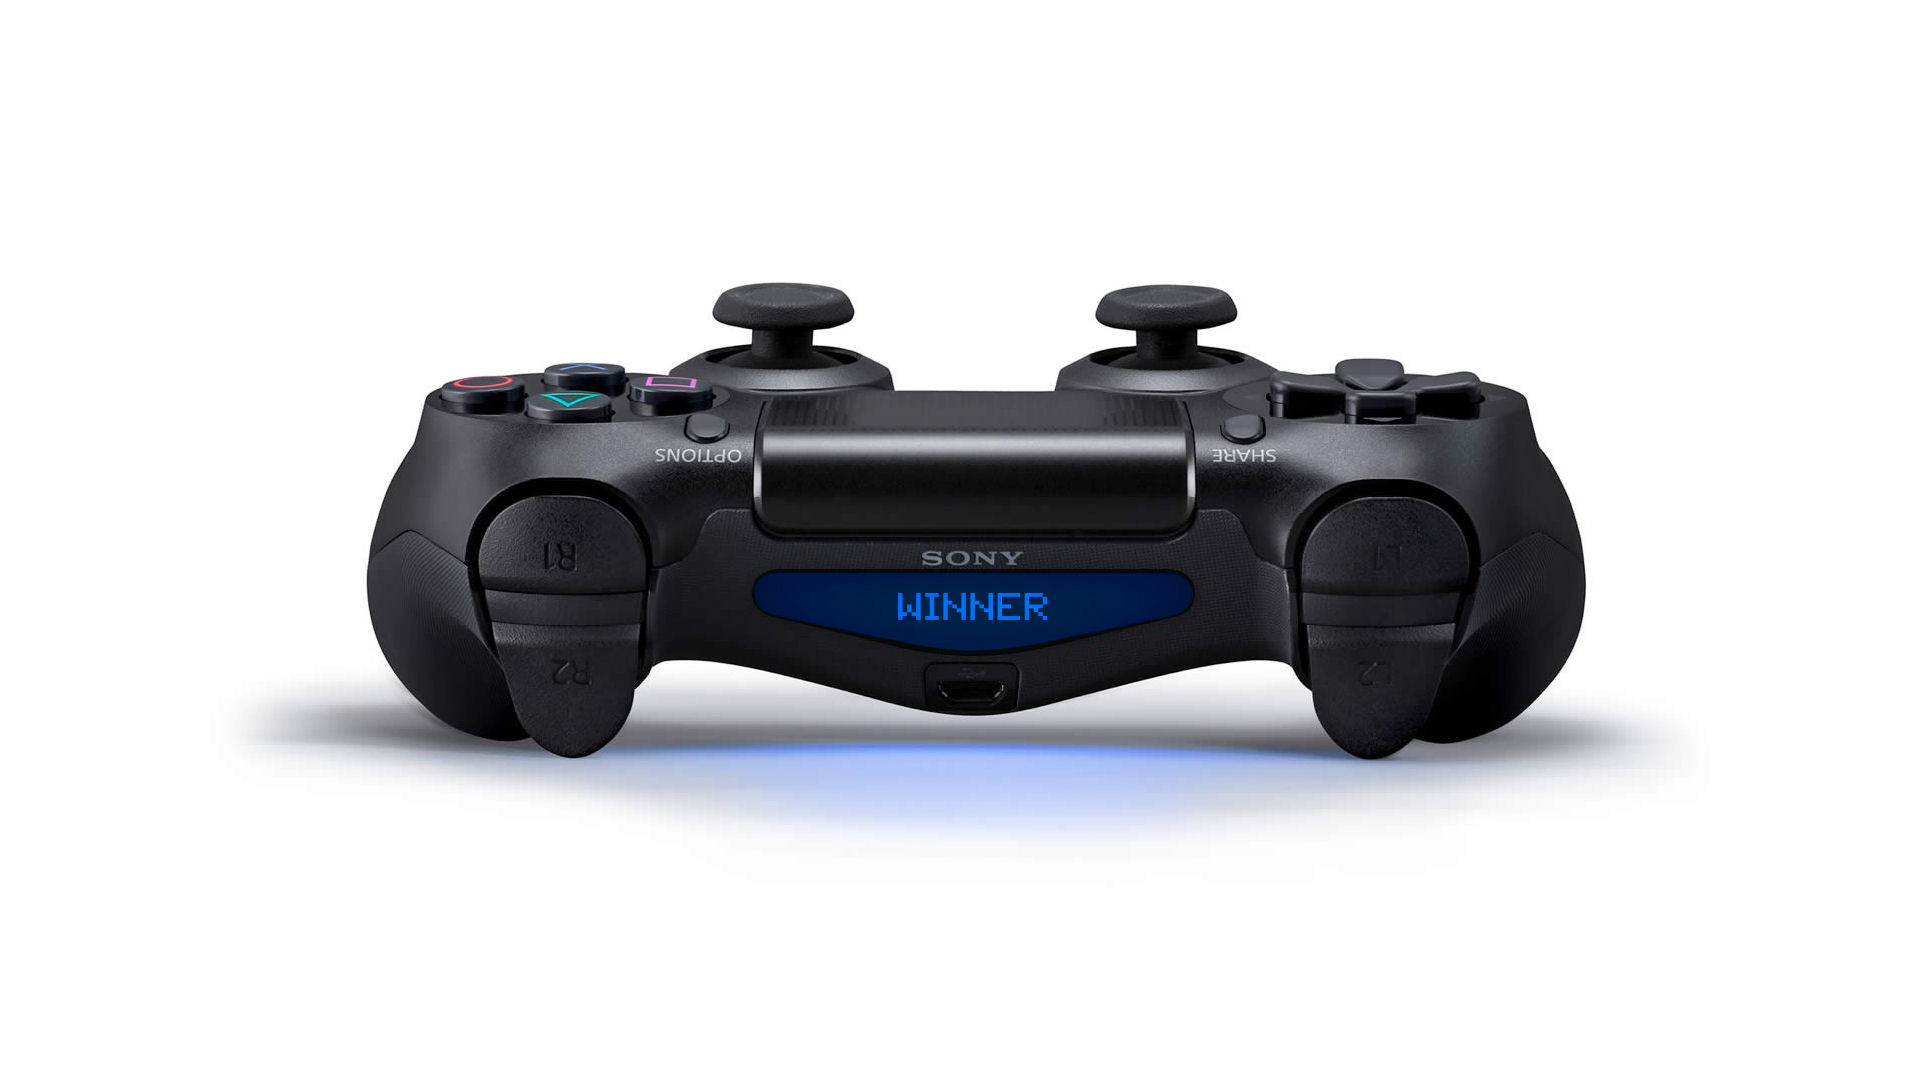 Samolepky na světelnou lištu herního ovladače pro PlayStation 4